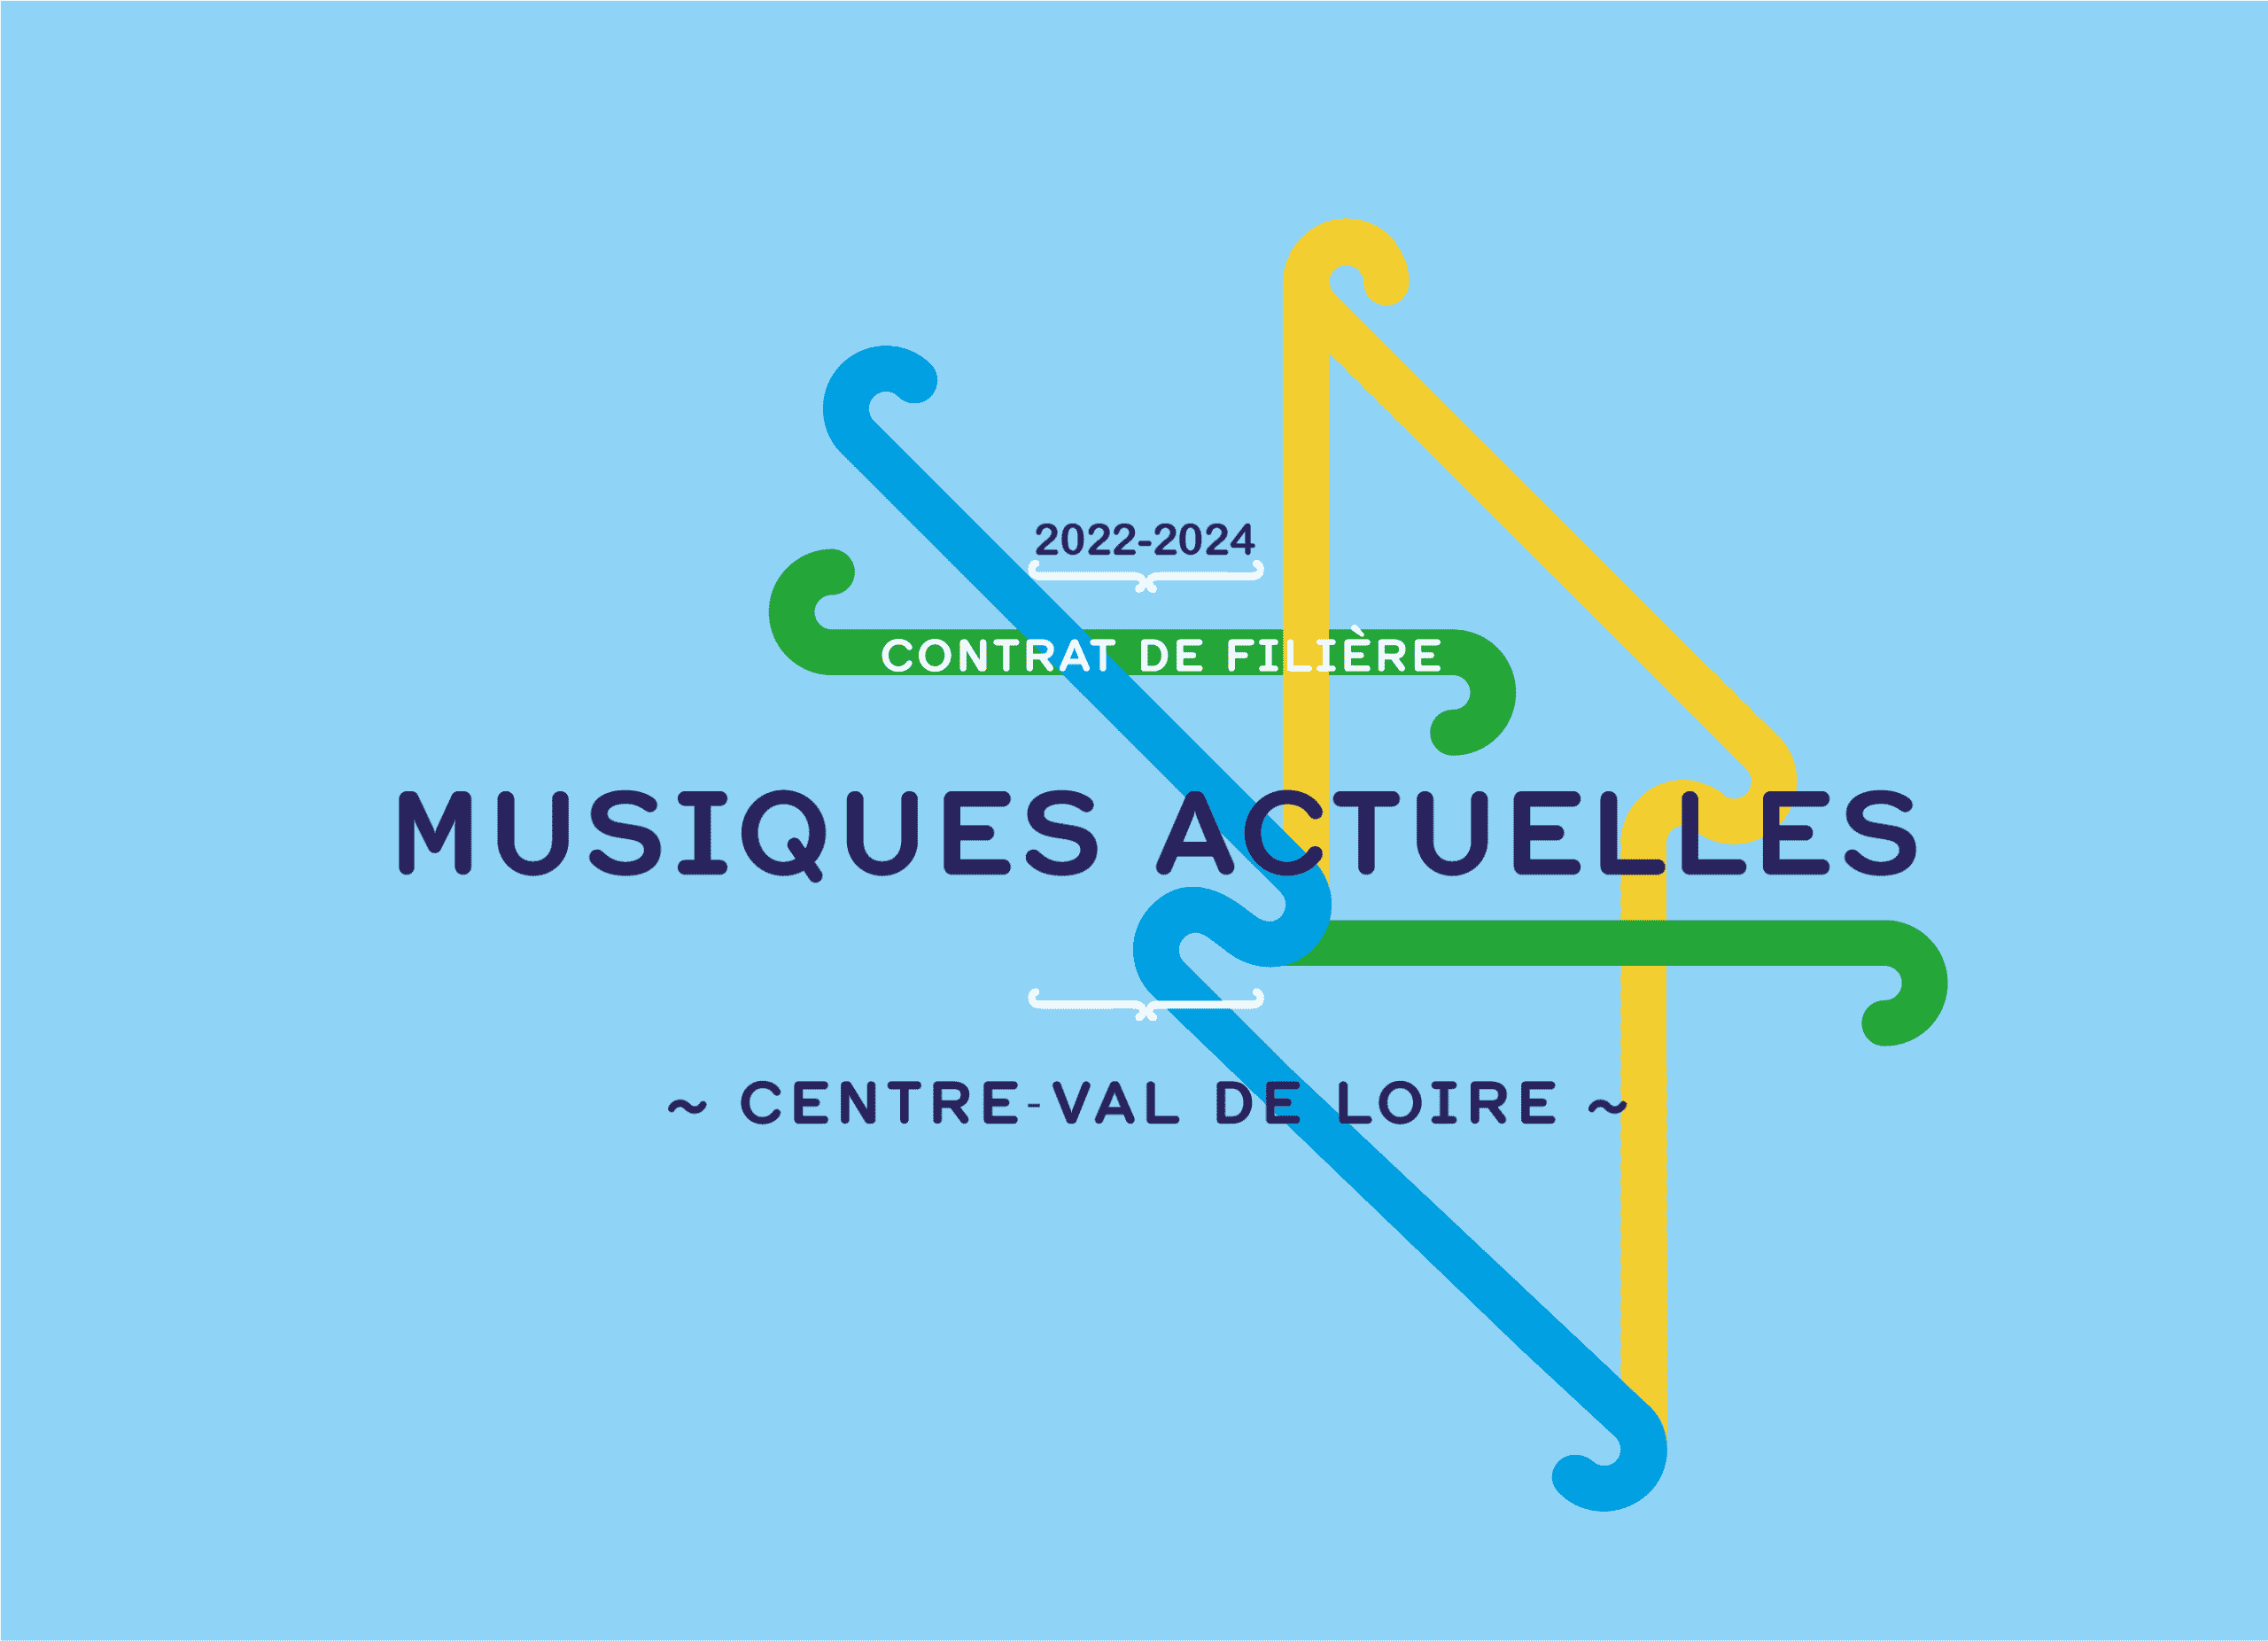 L’État - DRAC Centre-Val de Loire, le Centre national de la musique, la Région Centre-Val de Loire, la Fraca-Ma et Scène O Centre signent une convention de partenariat visant à soutenir la filière régionale des musiques actuelles